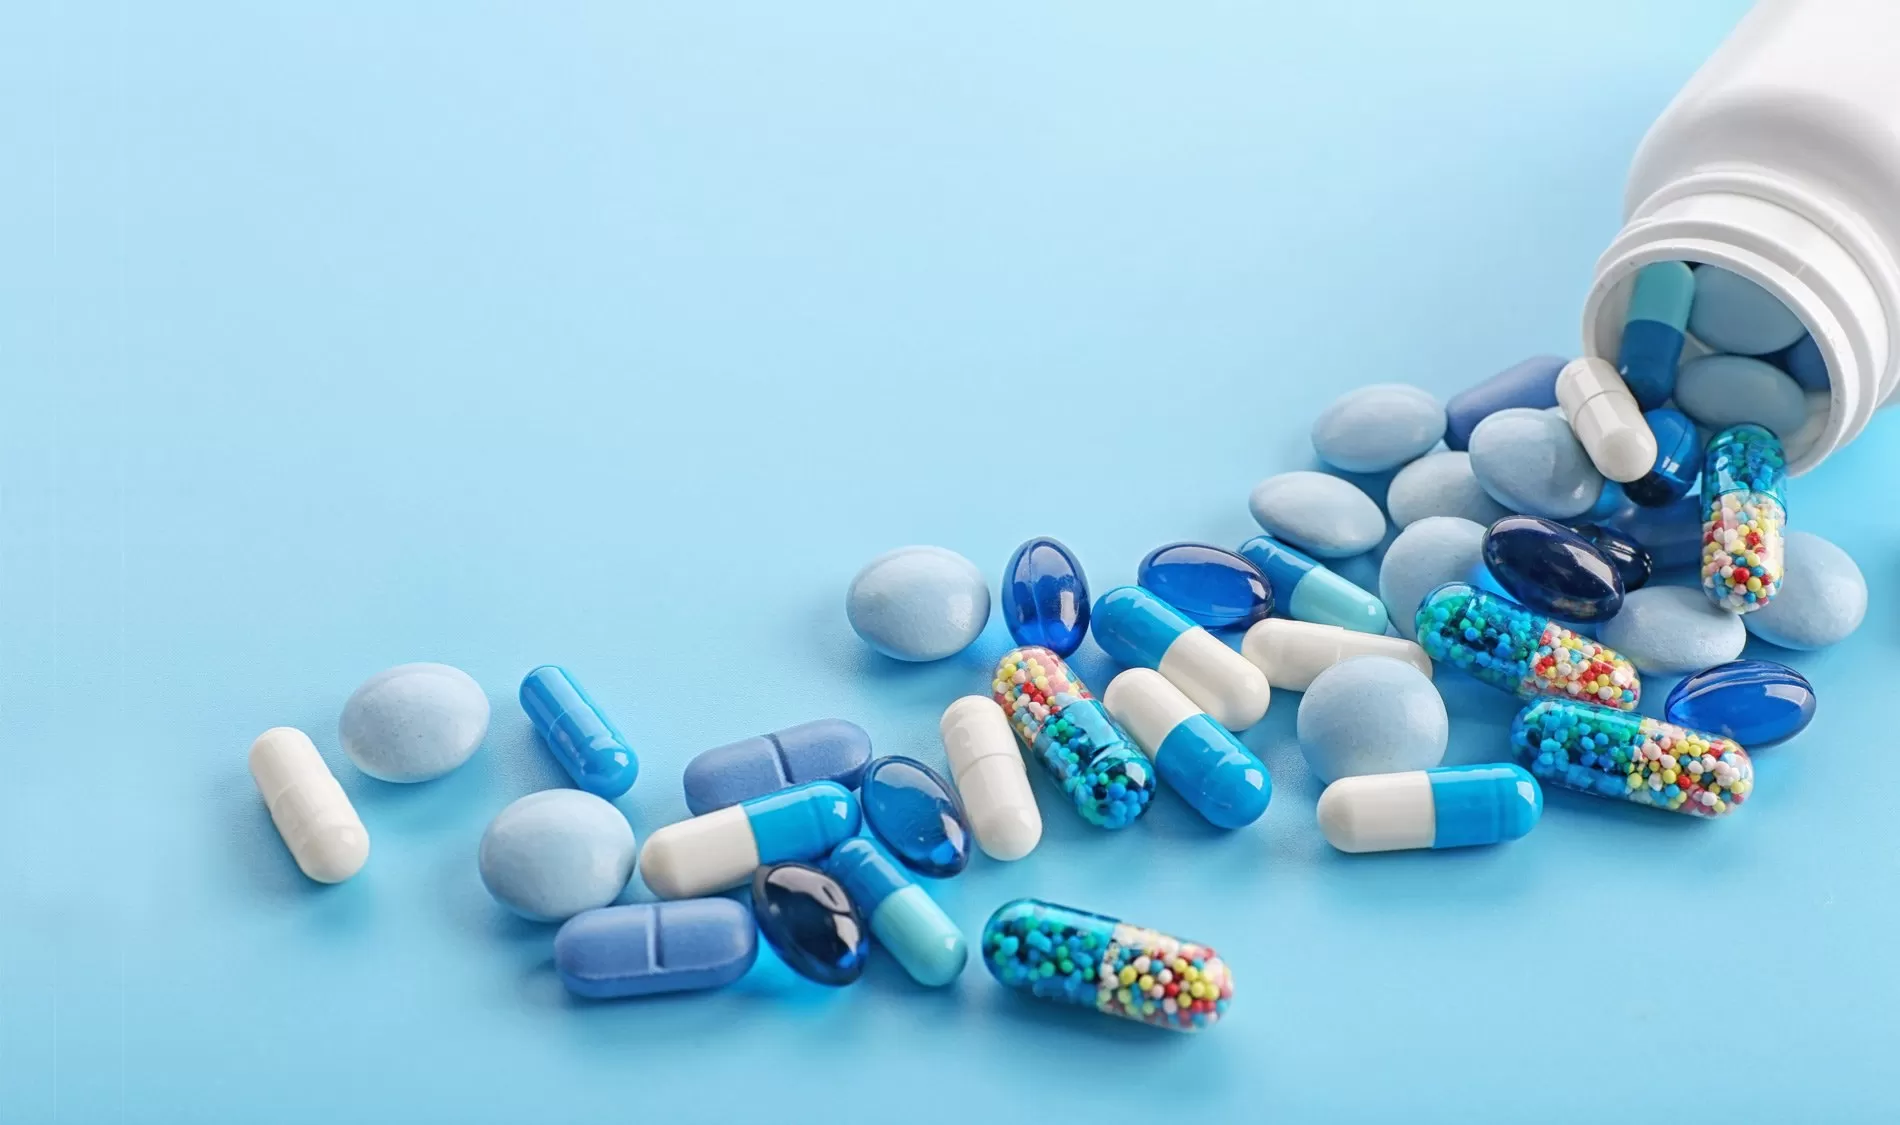 Generische Viagra-Pillen: Ein Leitfaden zur Wirksamkeit und Verfügbarkeit